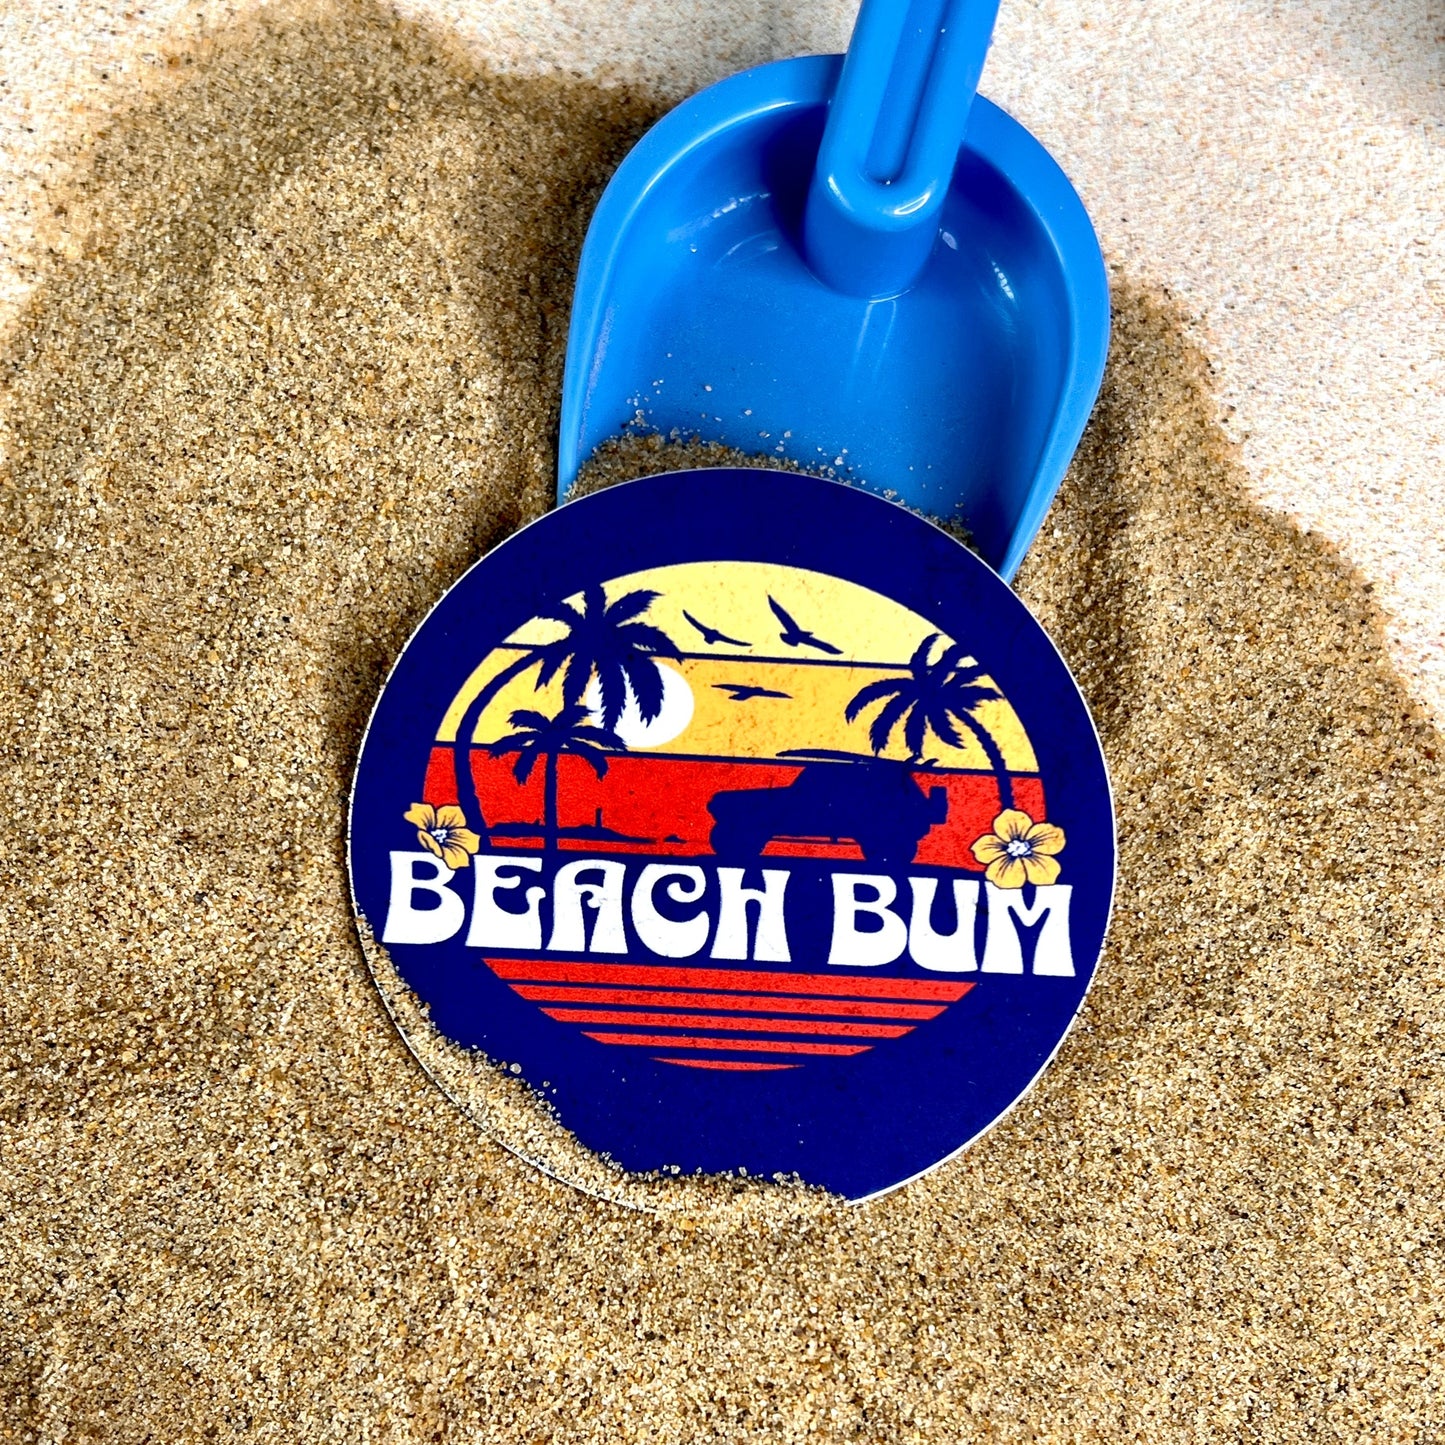 "Beach Bum" Waterproof Sticker Decal